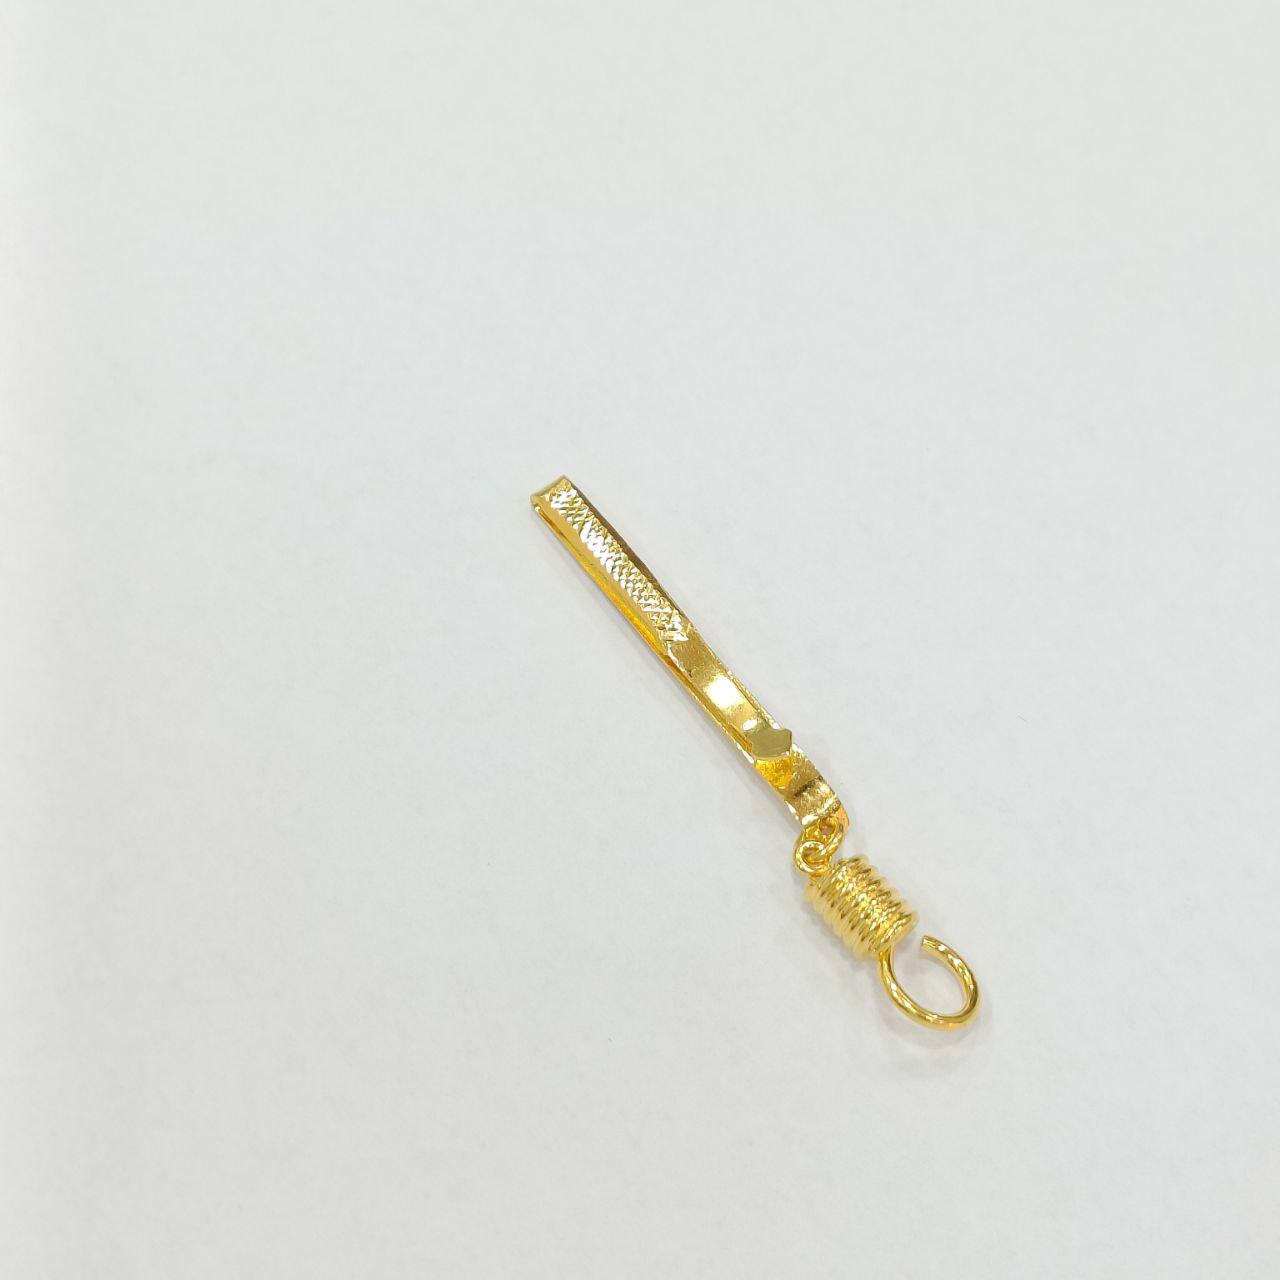 22k / 916 Gold Amulet Clip-Charms & Pendants-Best Gold Shop